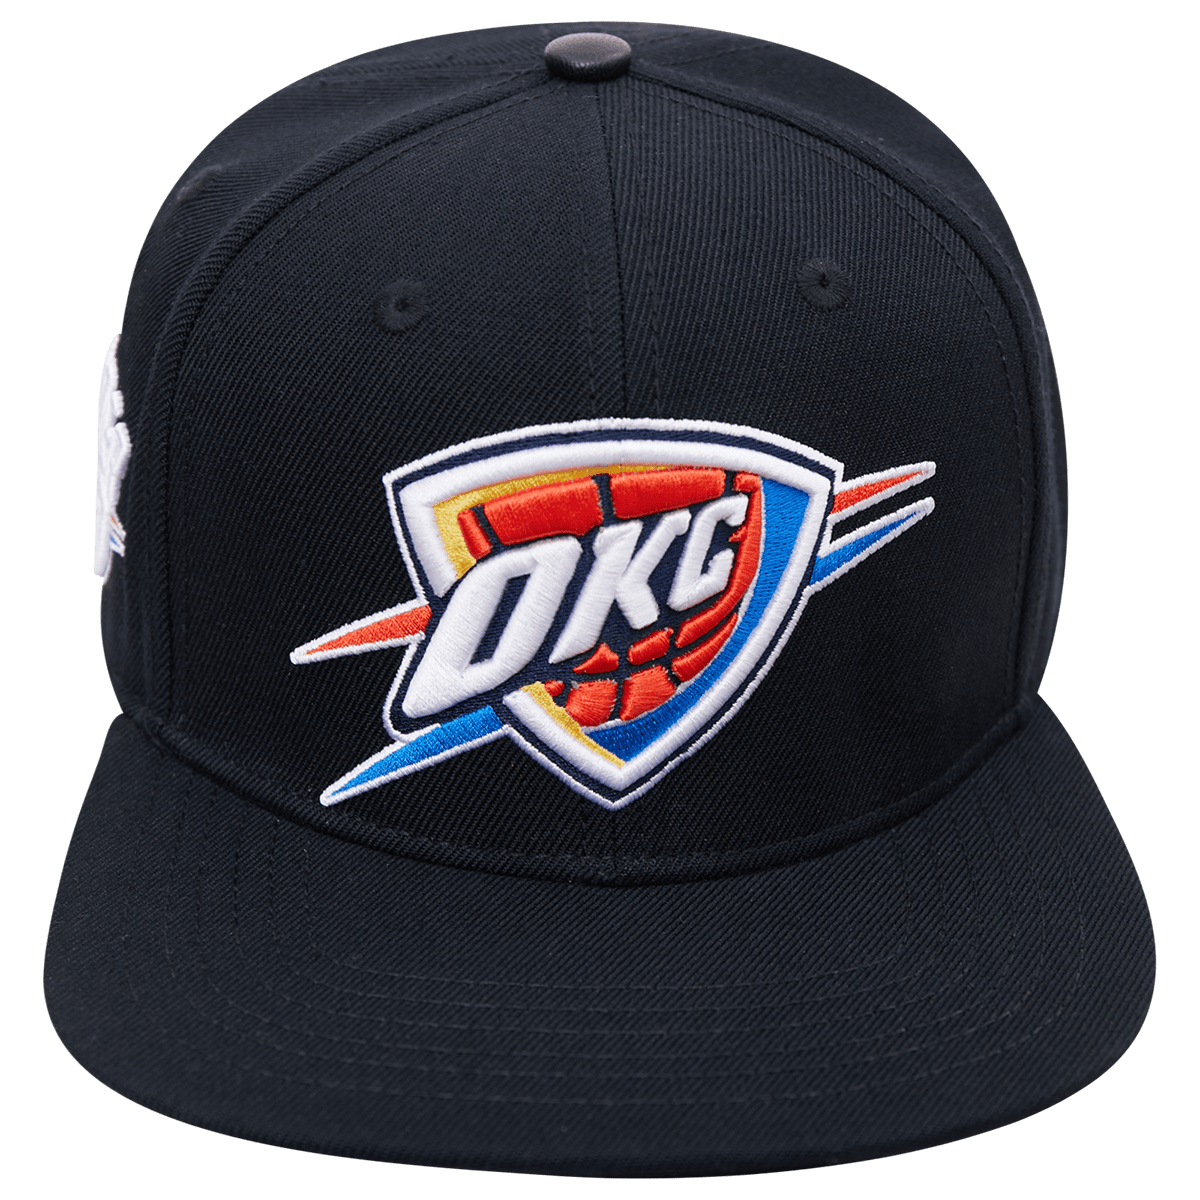 Oklahoma City Thunder Cap